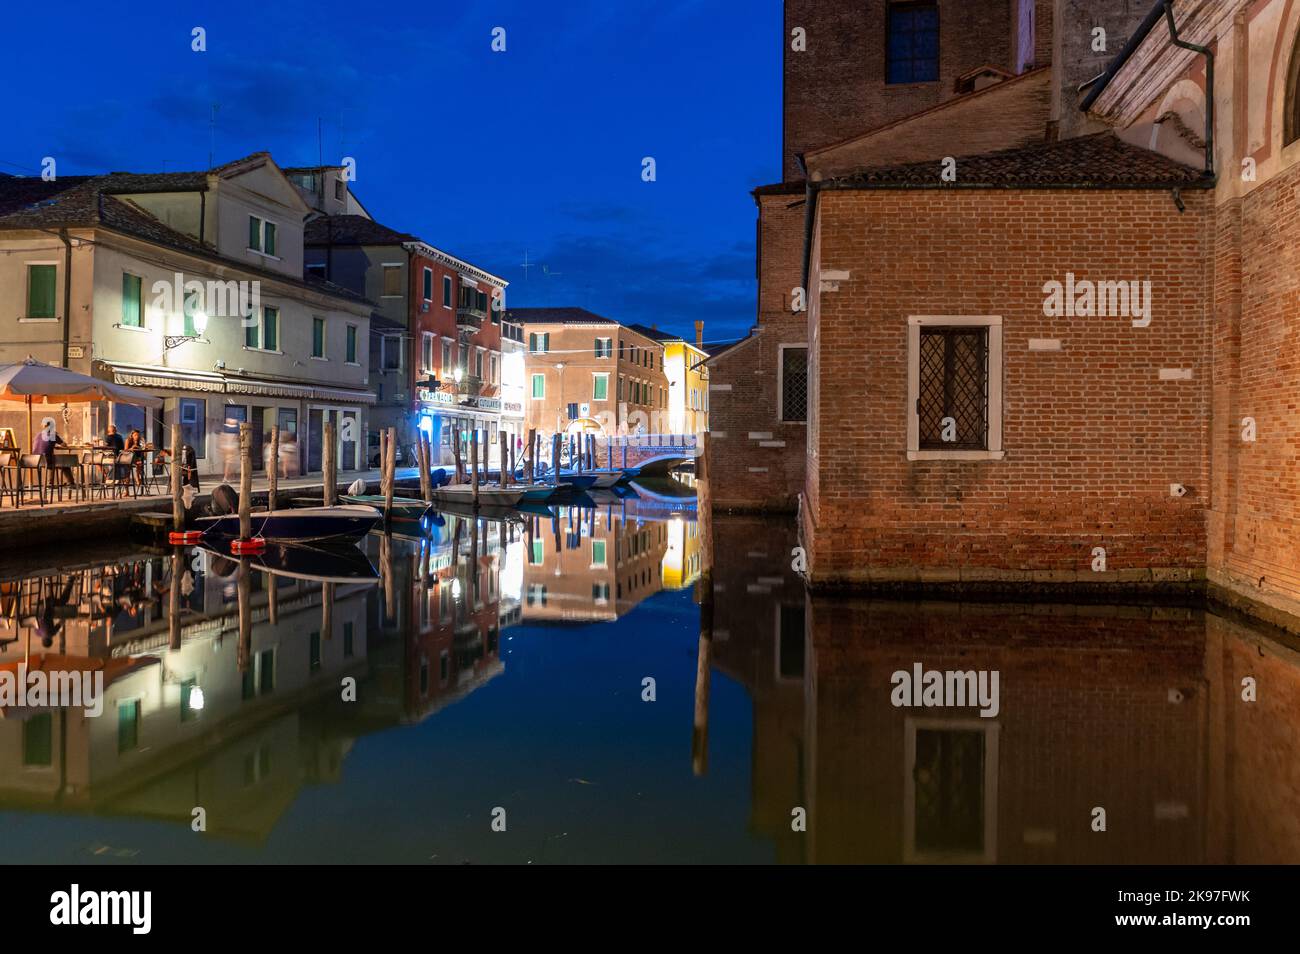 Allgemeiner Blick auf die Kanäle von Chioogia (Spitzname „Klein-Venedig“) mit den Booten und Gebäuden, die sich in der Dämmerung im Wasser unter dem künstlichen Licht spiegeln. Chioggia, eine Stadt in der venezianischen Lagune, die viele Touristen beherbergt, die Venedig besuchen, wurde nicht in den venezianischen Stadtkern aufgenommen. Touristen, die dort bleiben, müssen die Steuer jedes Mal zahlen, wenn sie Venedig ab dem 16. Januar 2023 besuchen. Stockfoto